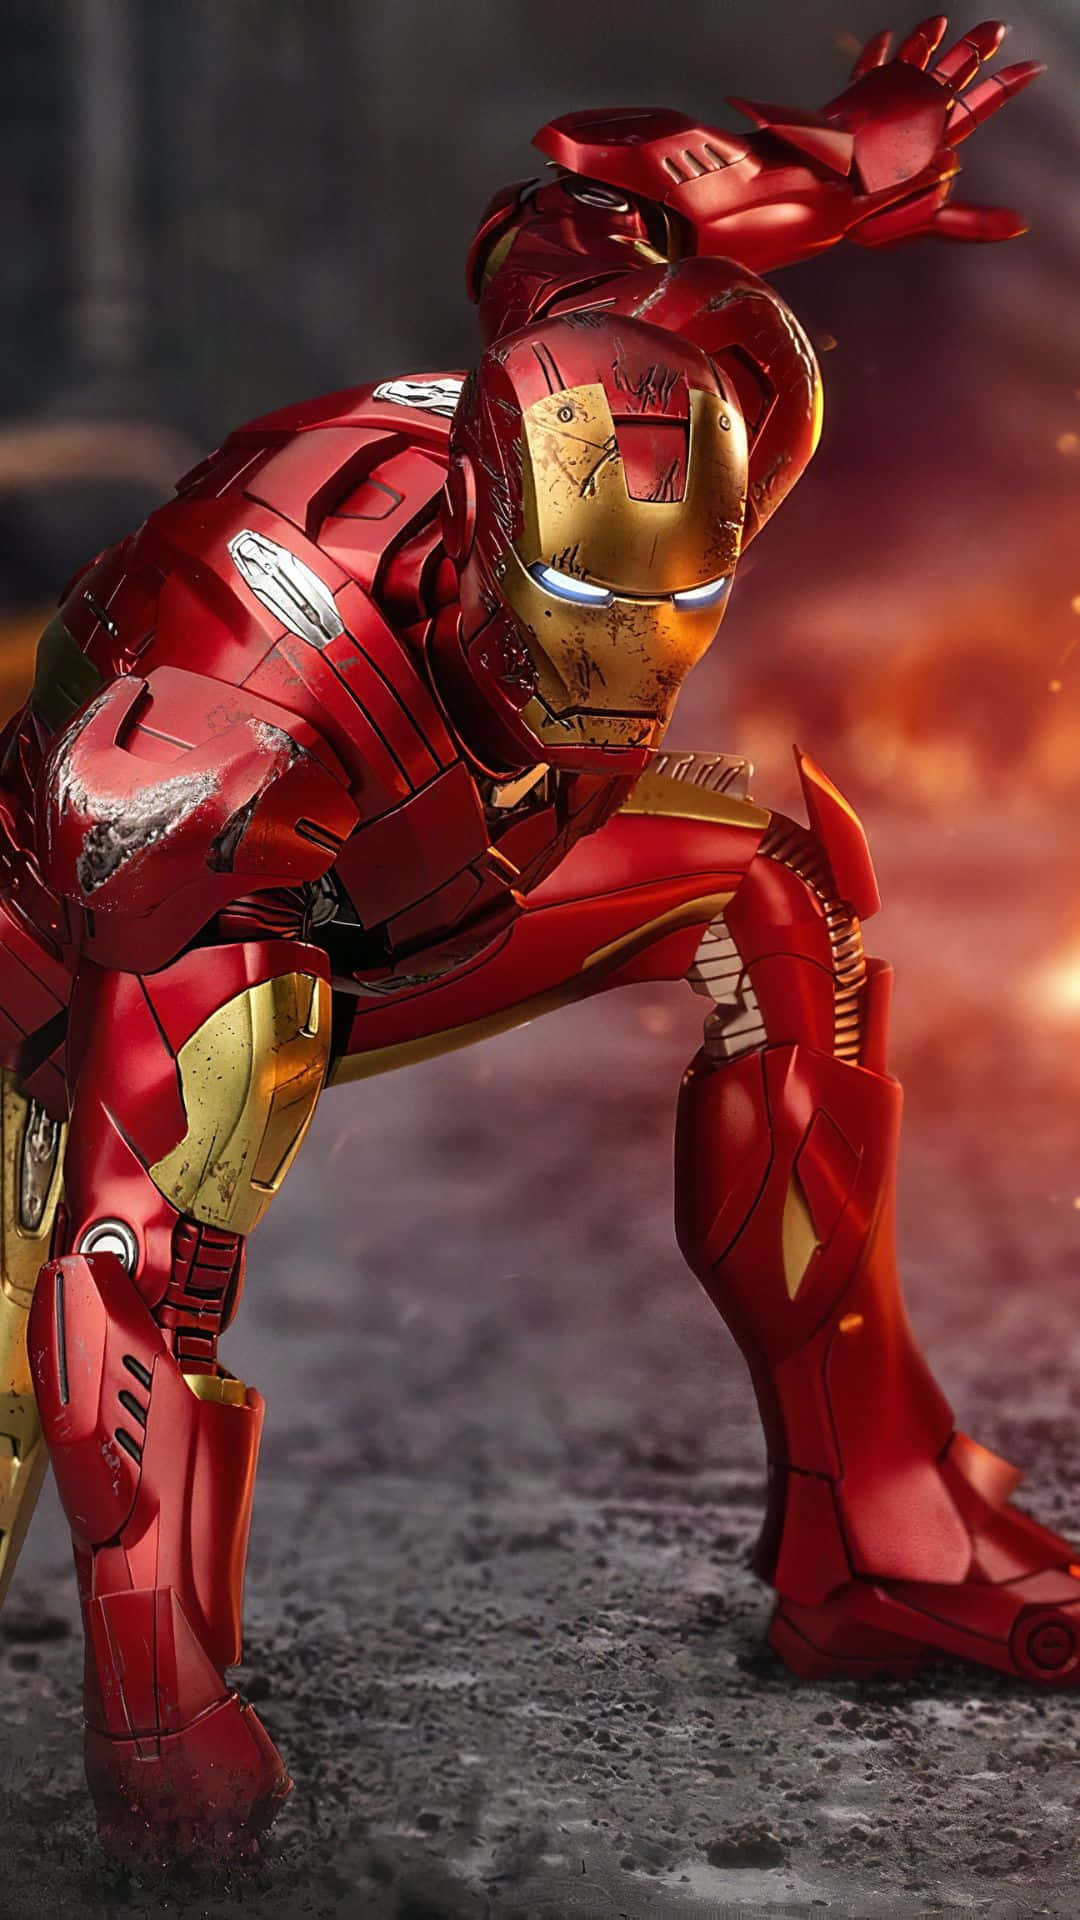 Skapadin Egen Iron Man-äventyr Med Android Iron Man!